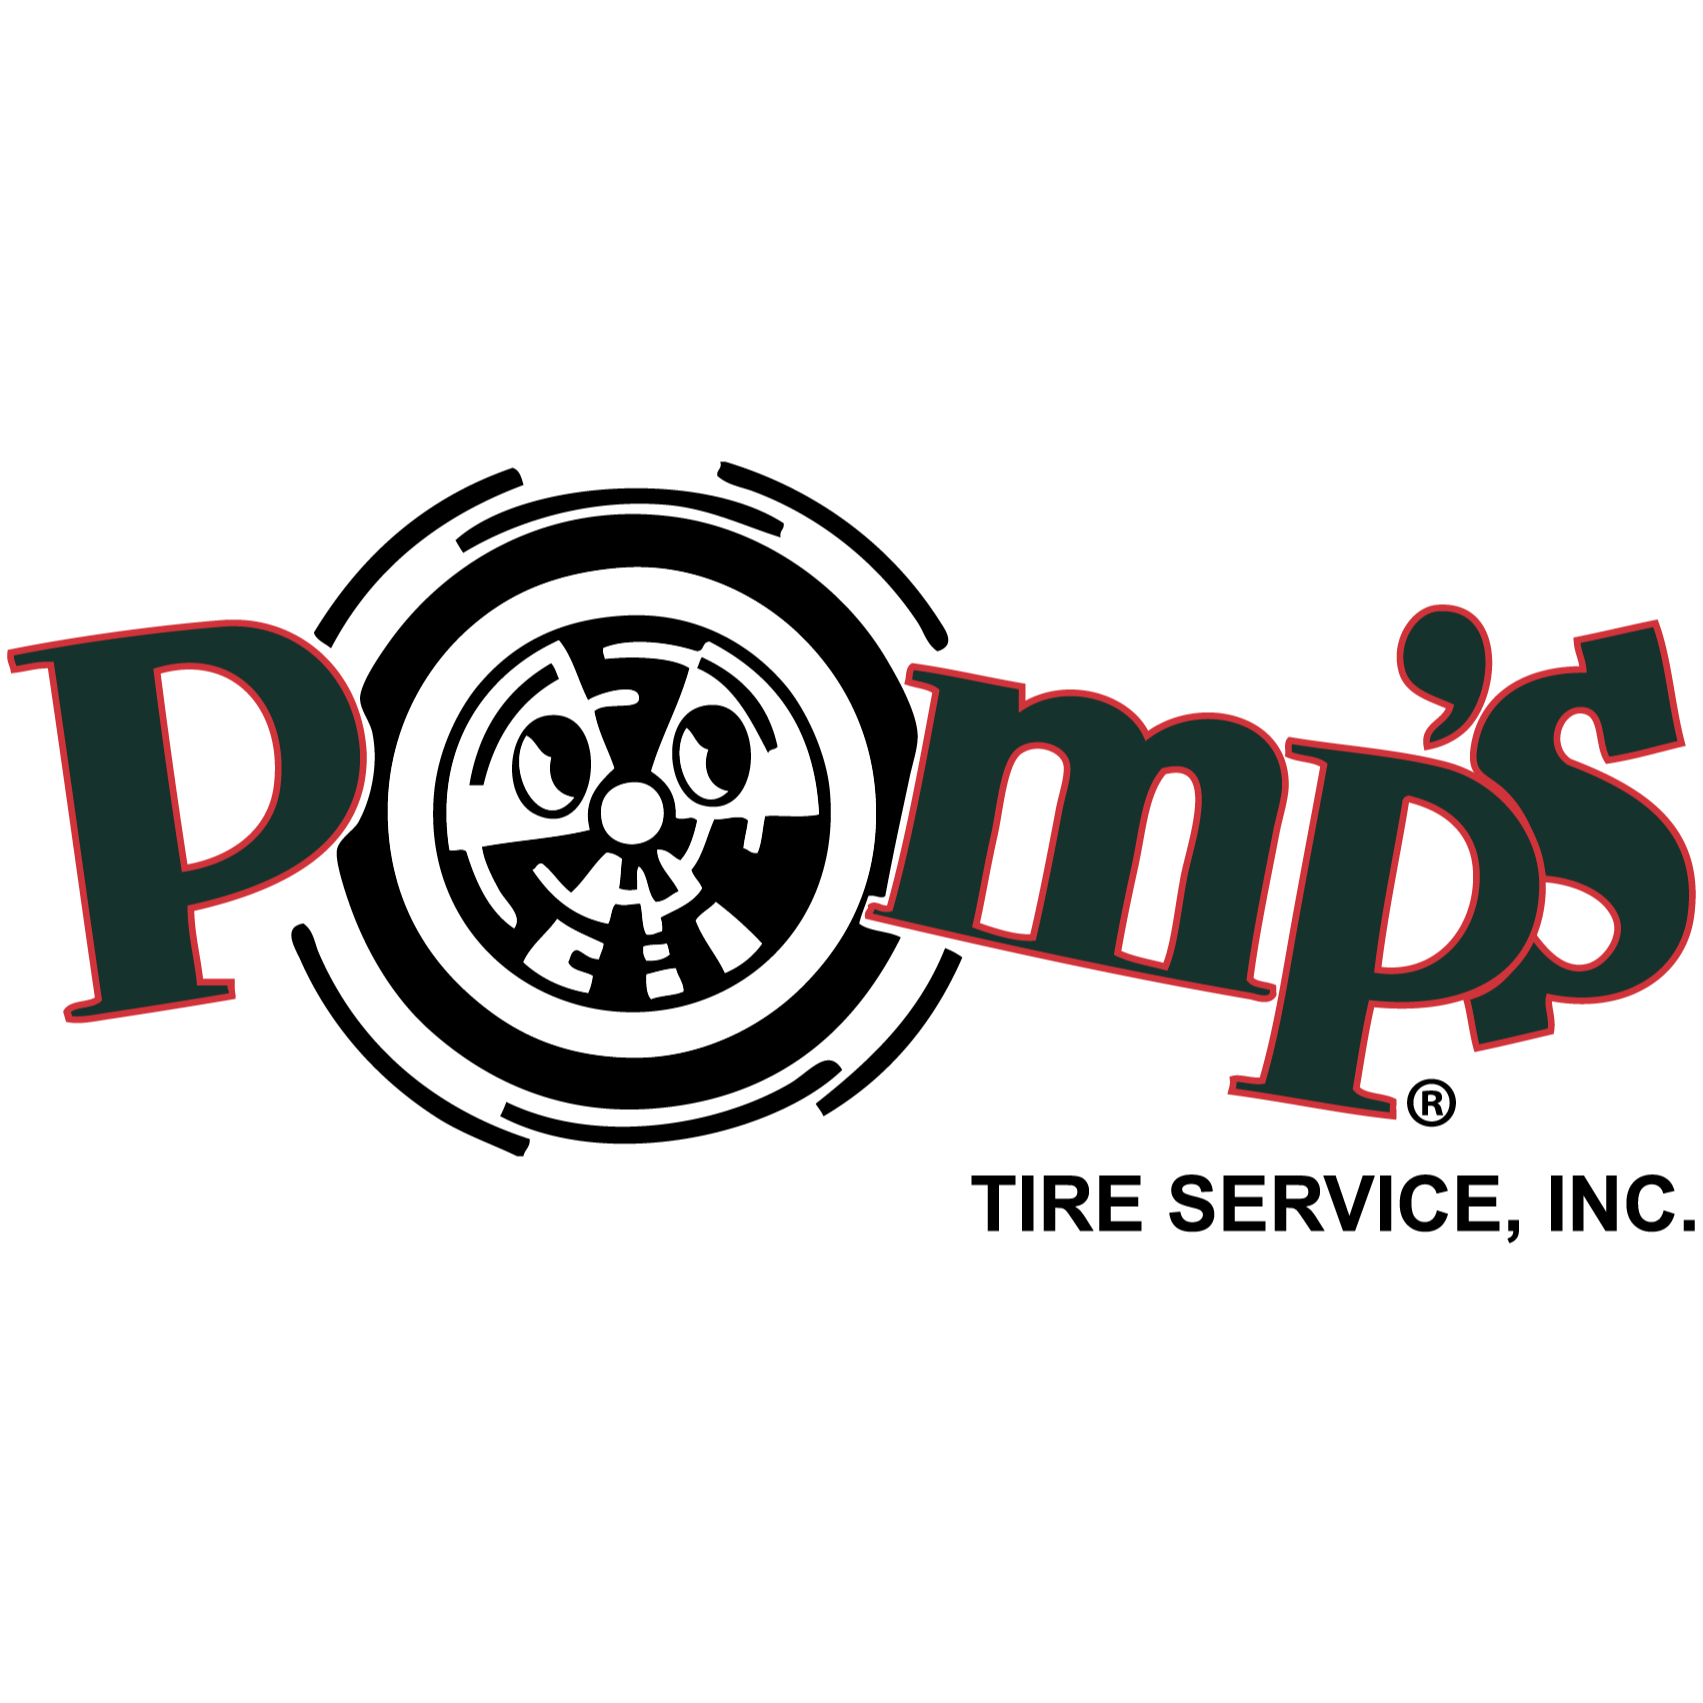 Pomp's Tire Service - Joliet, IL 60433 - (815)726-7470 | ShowMeLocal.com